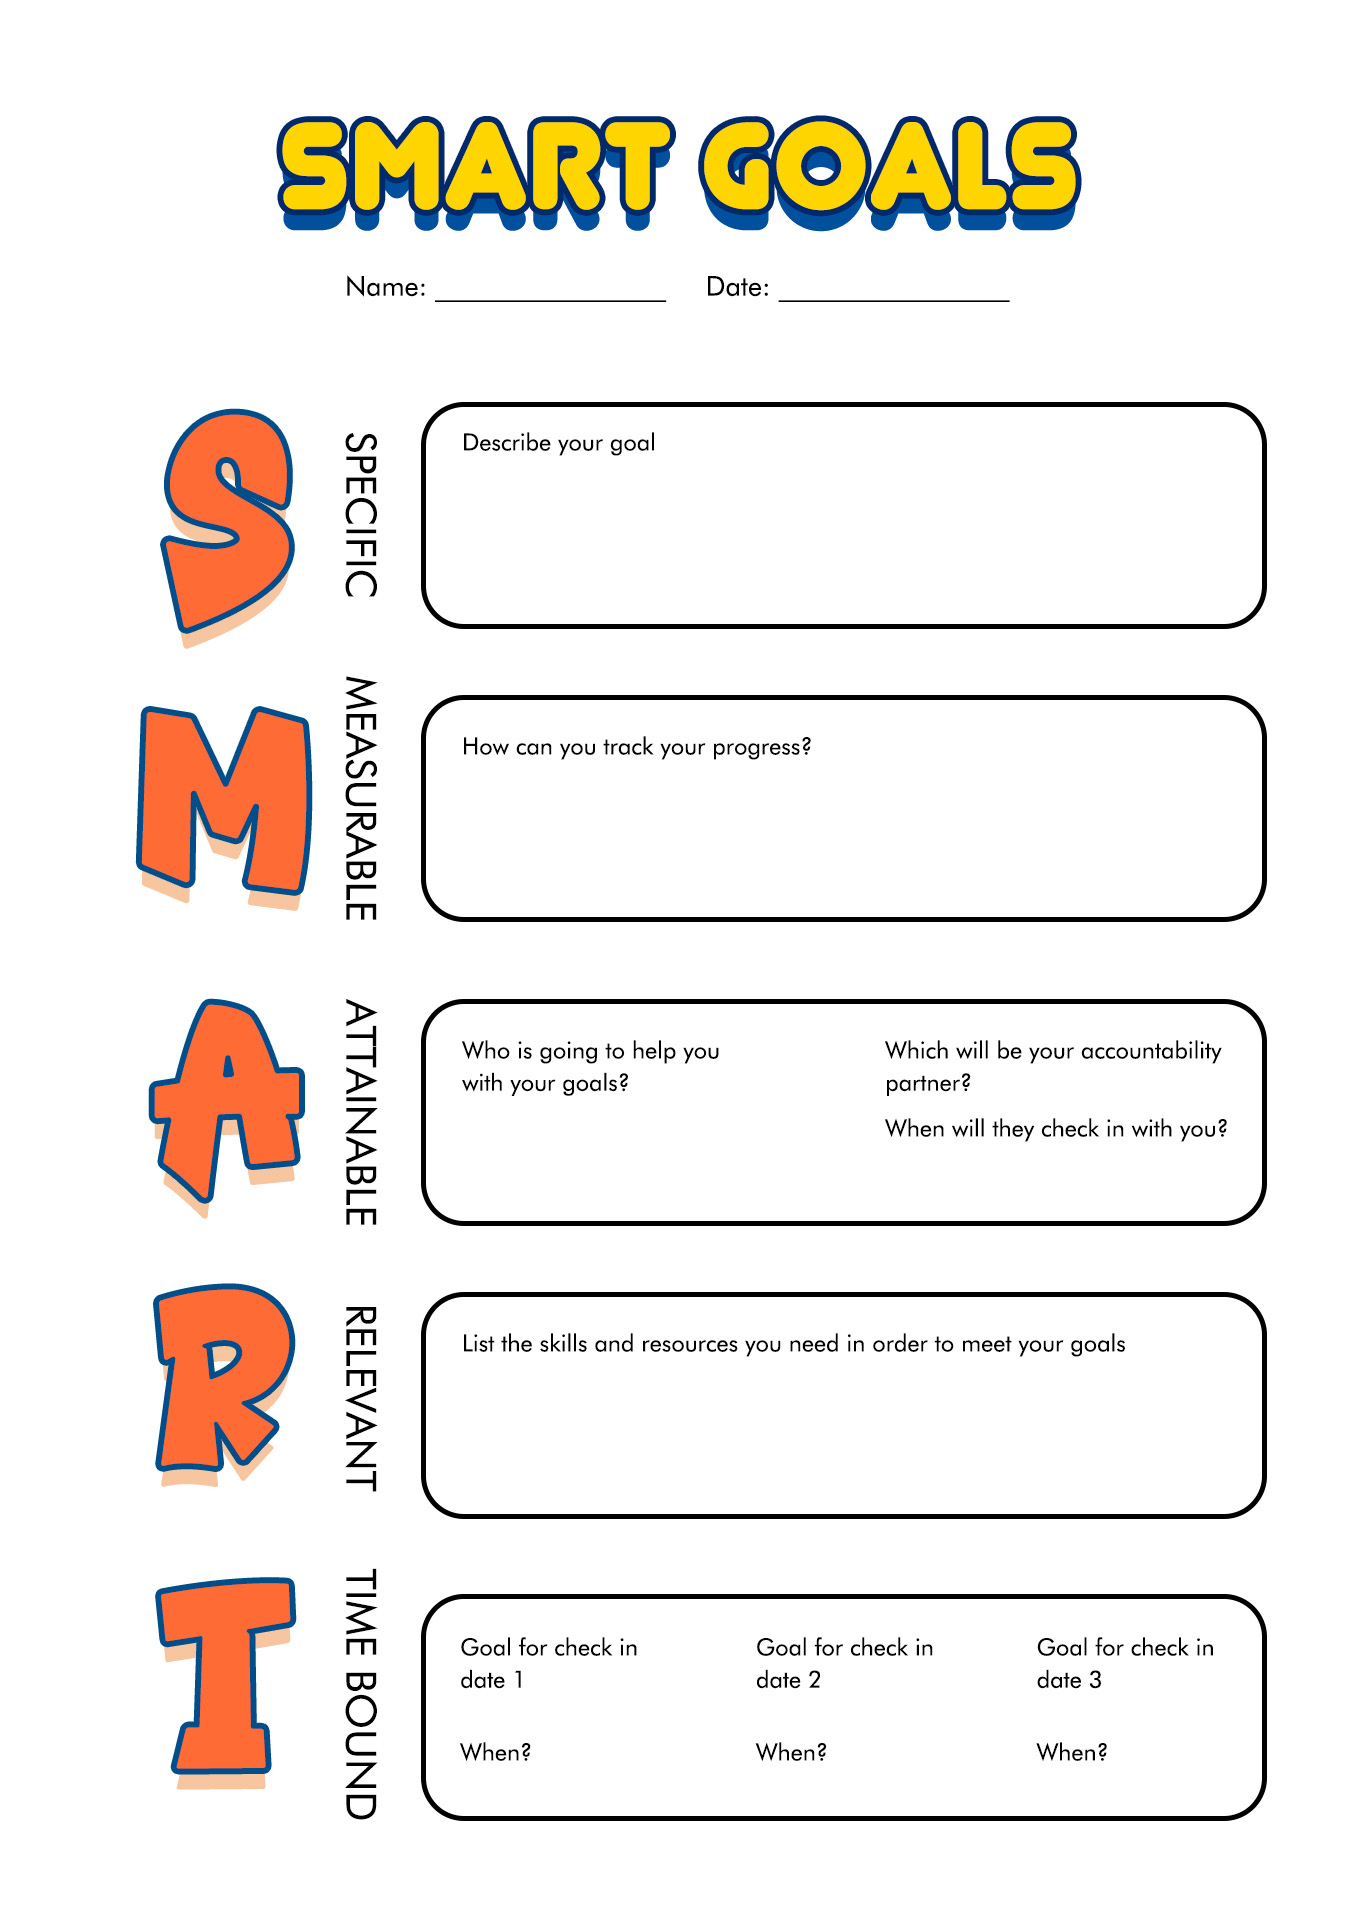 Smart Goal Worksheet Middle School Image